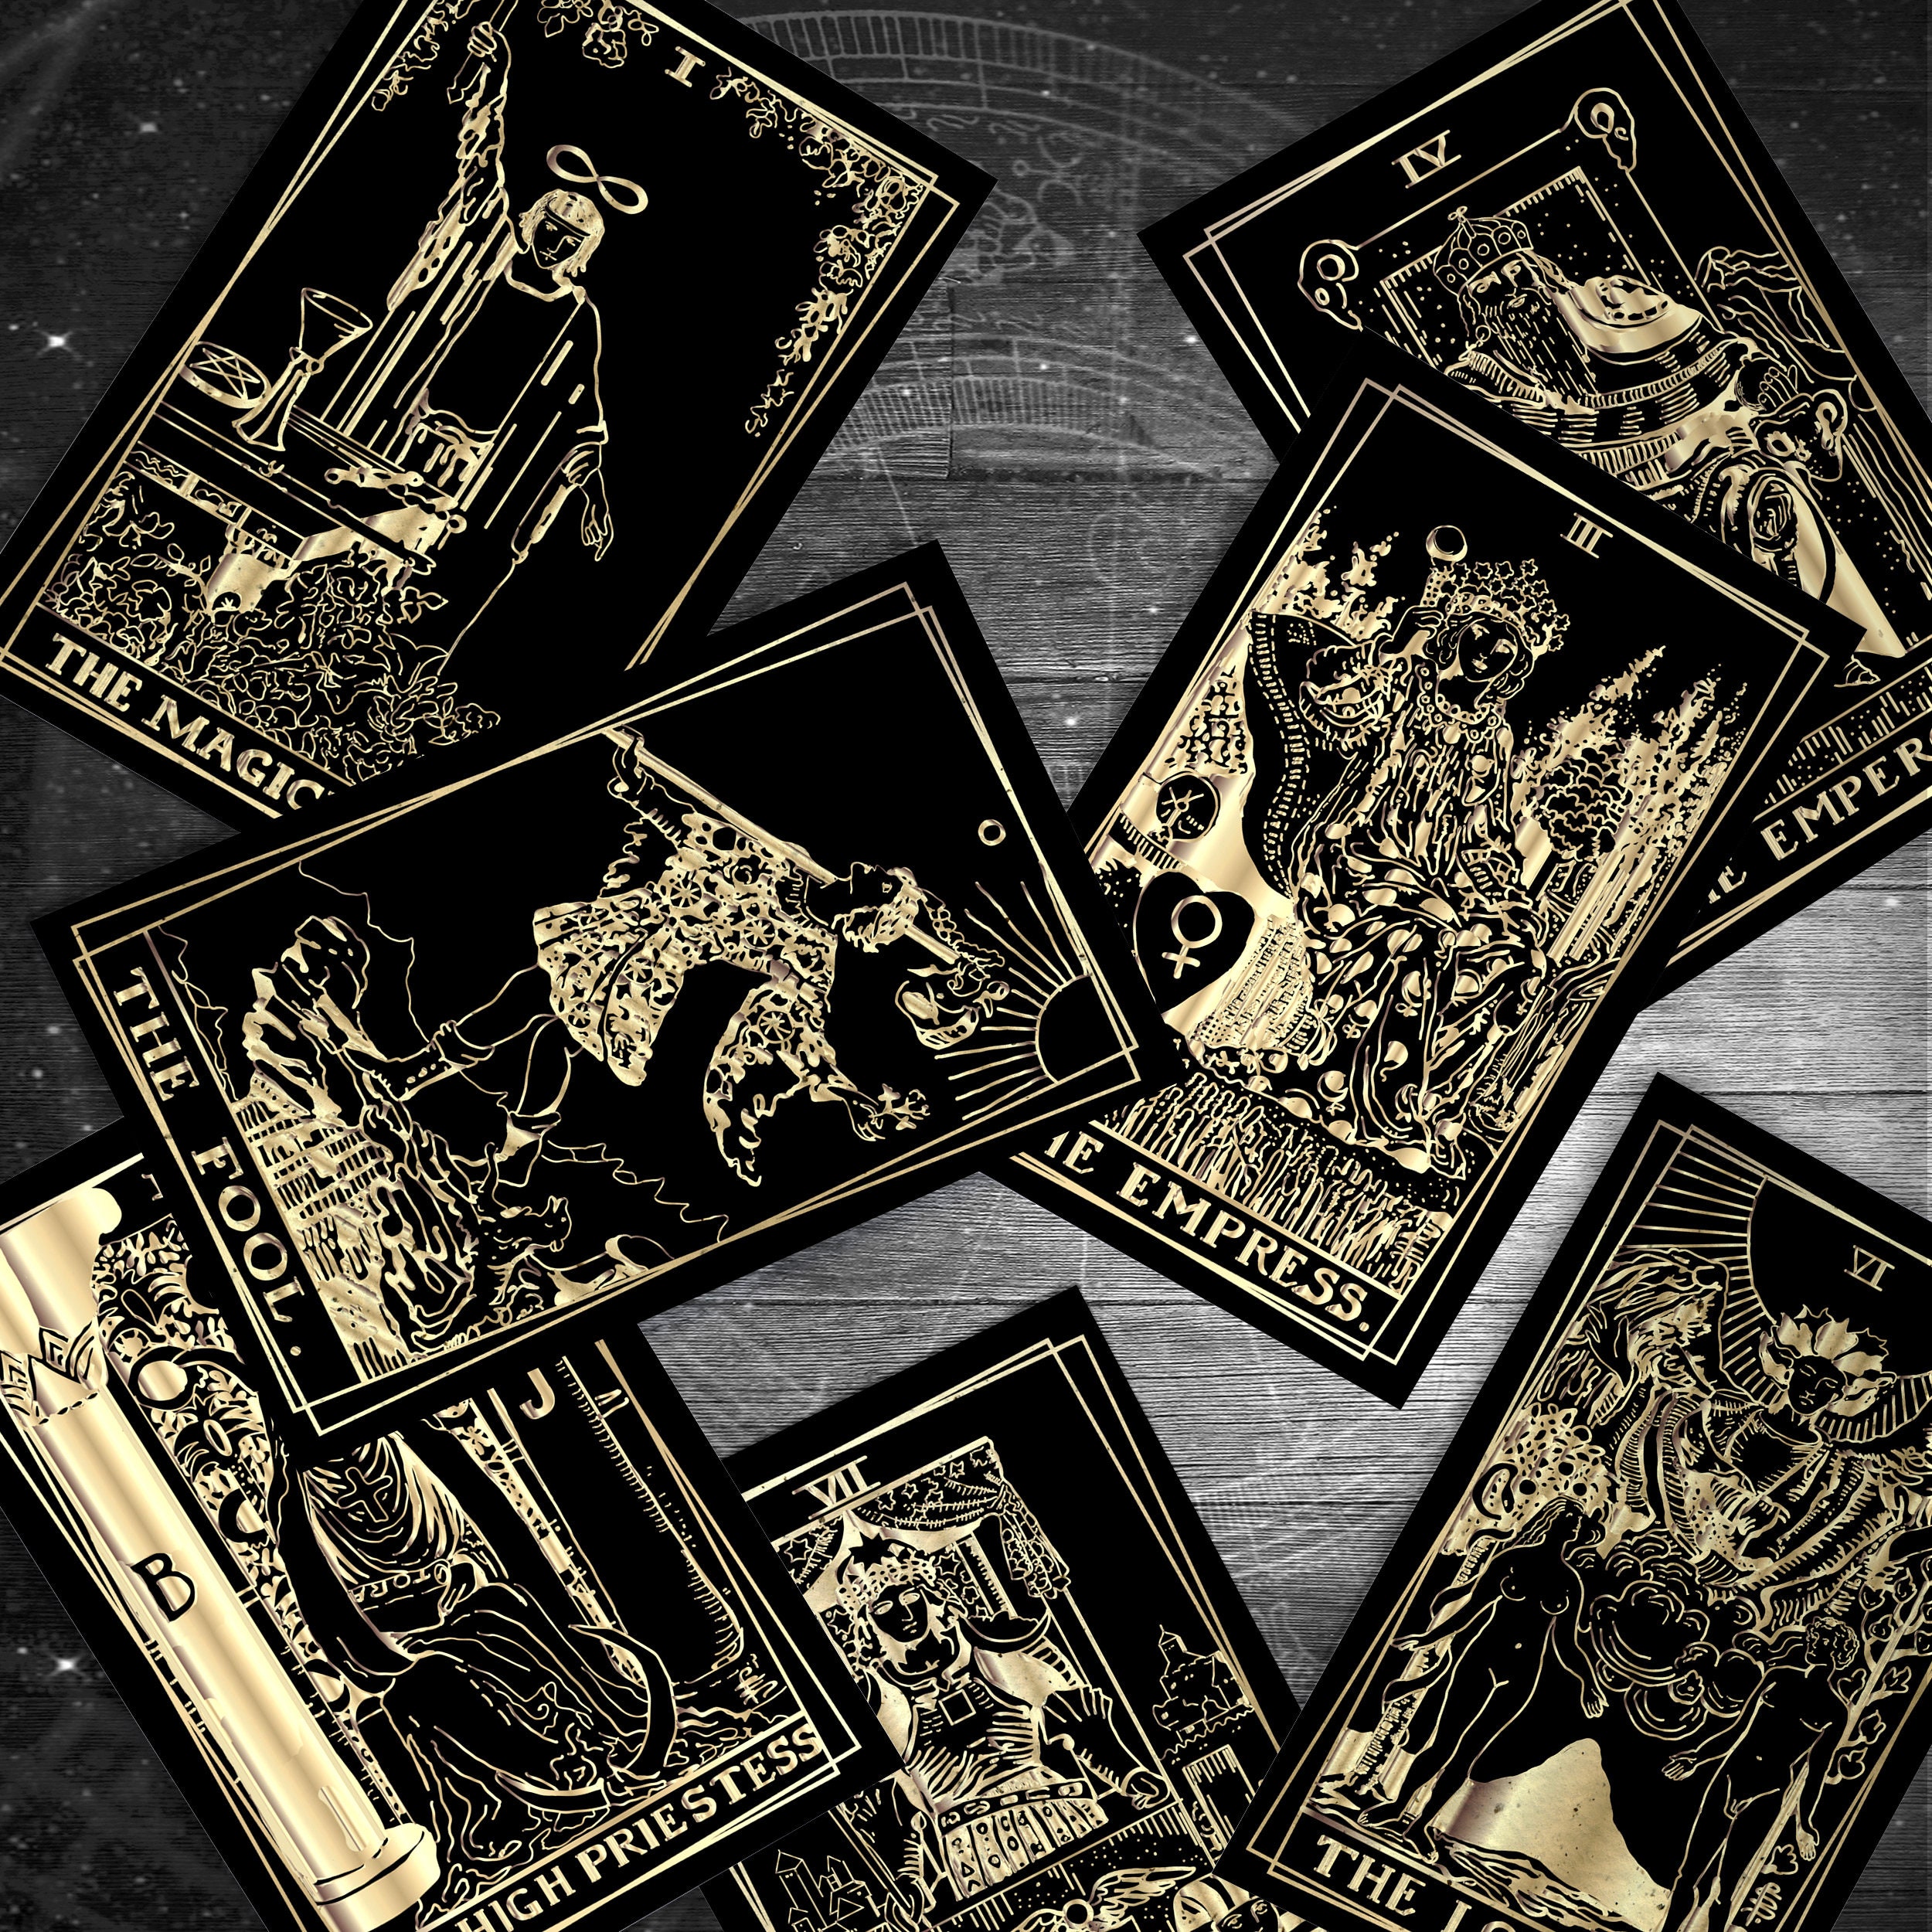 Tarot deck, tarot card deck, tarot cards, oracle deck, 78 cards